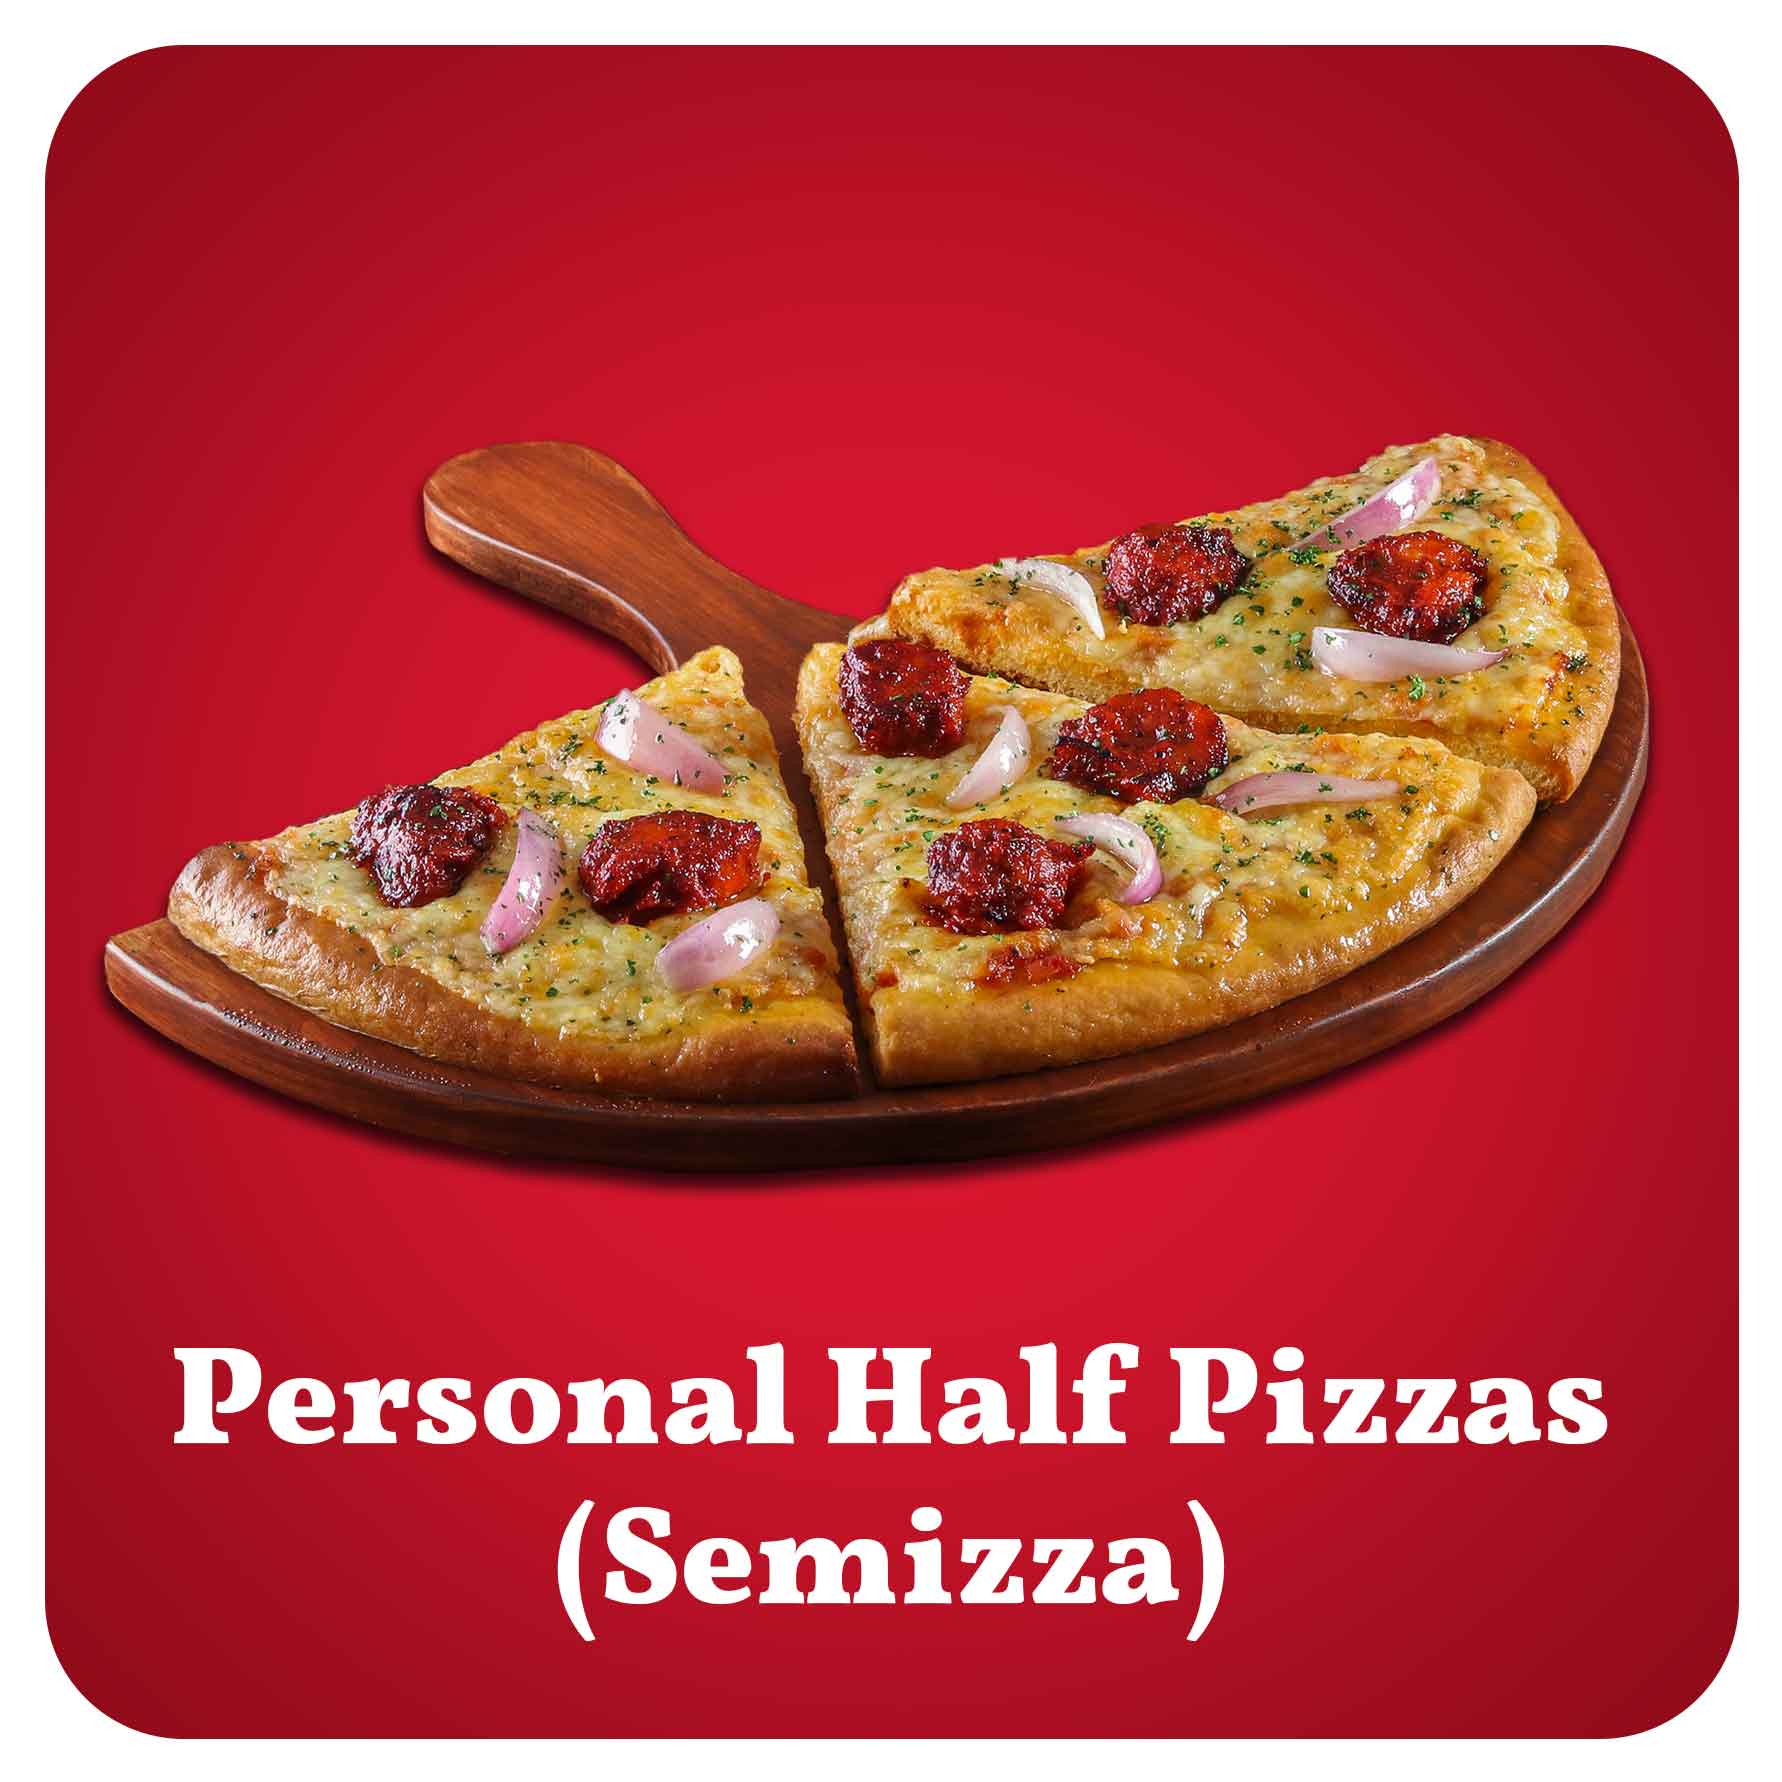 Order Personal Half Pizzas (Semizzas) near me